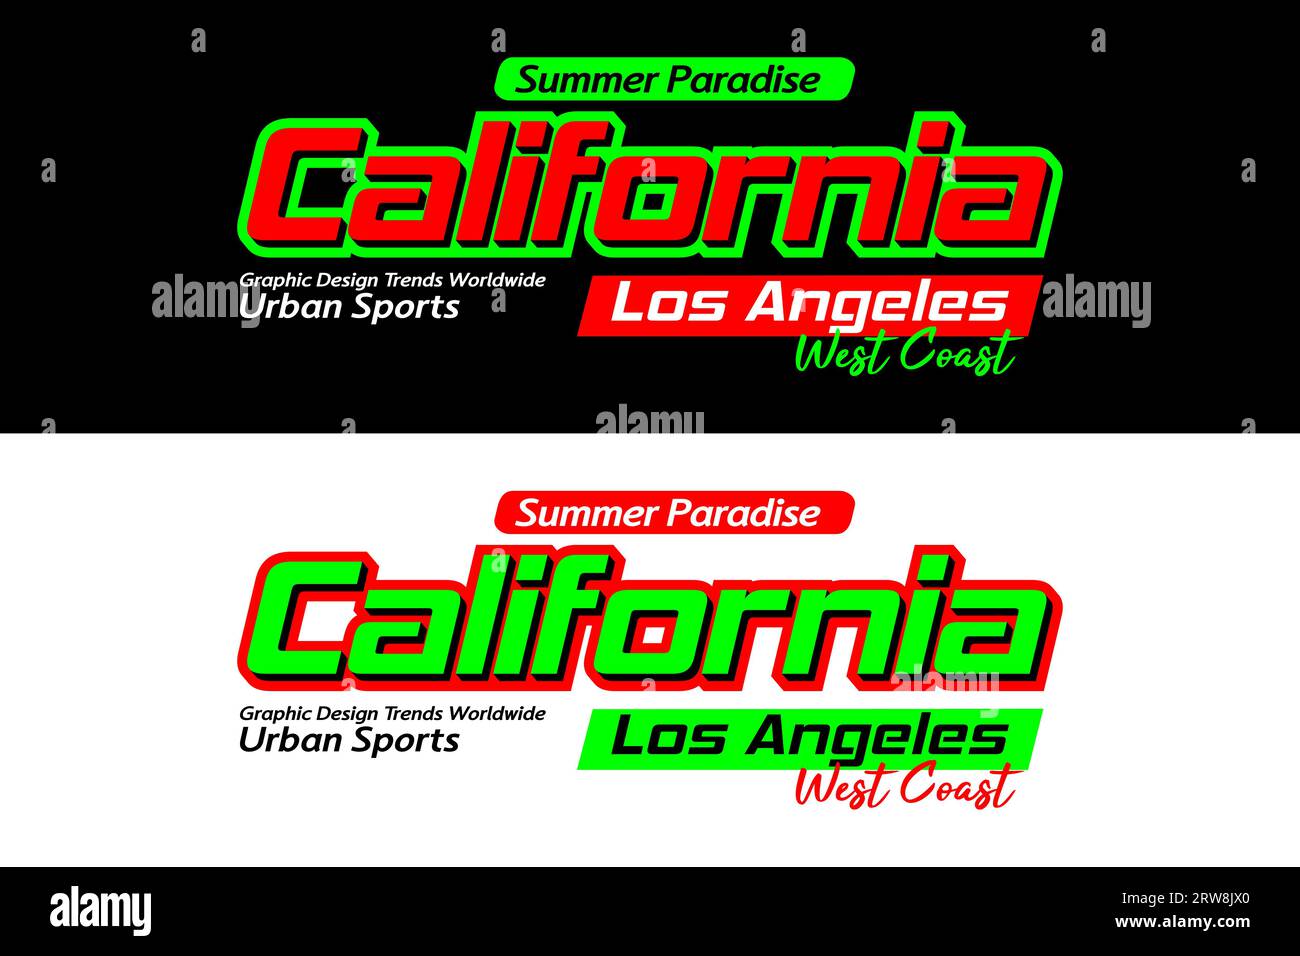 Design sportif urbain californien, typographie graphique pour t-shirt, affiches, étiquettes, etc Illustration de Vecteur